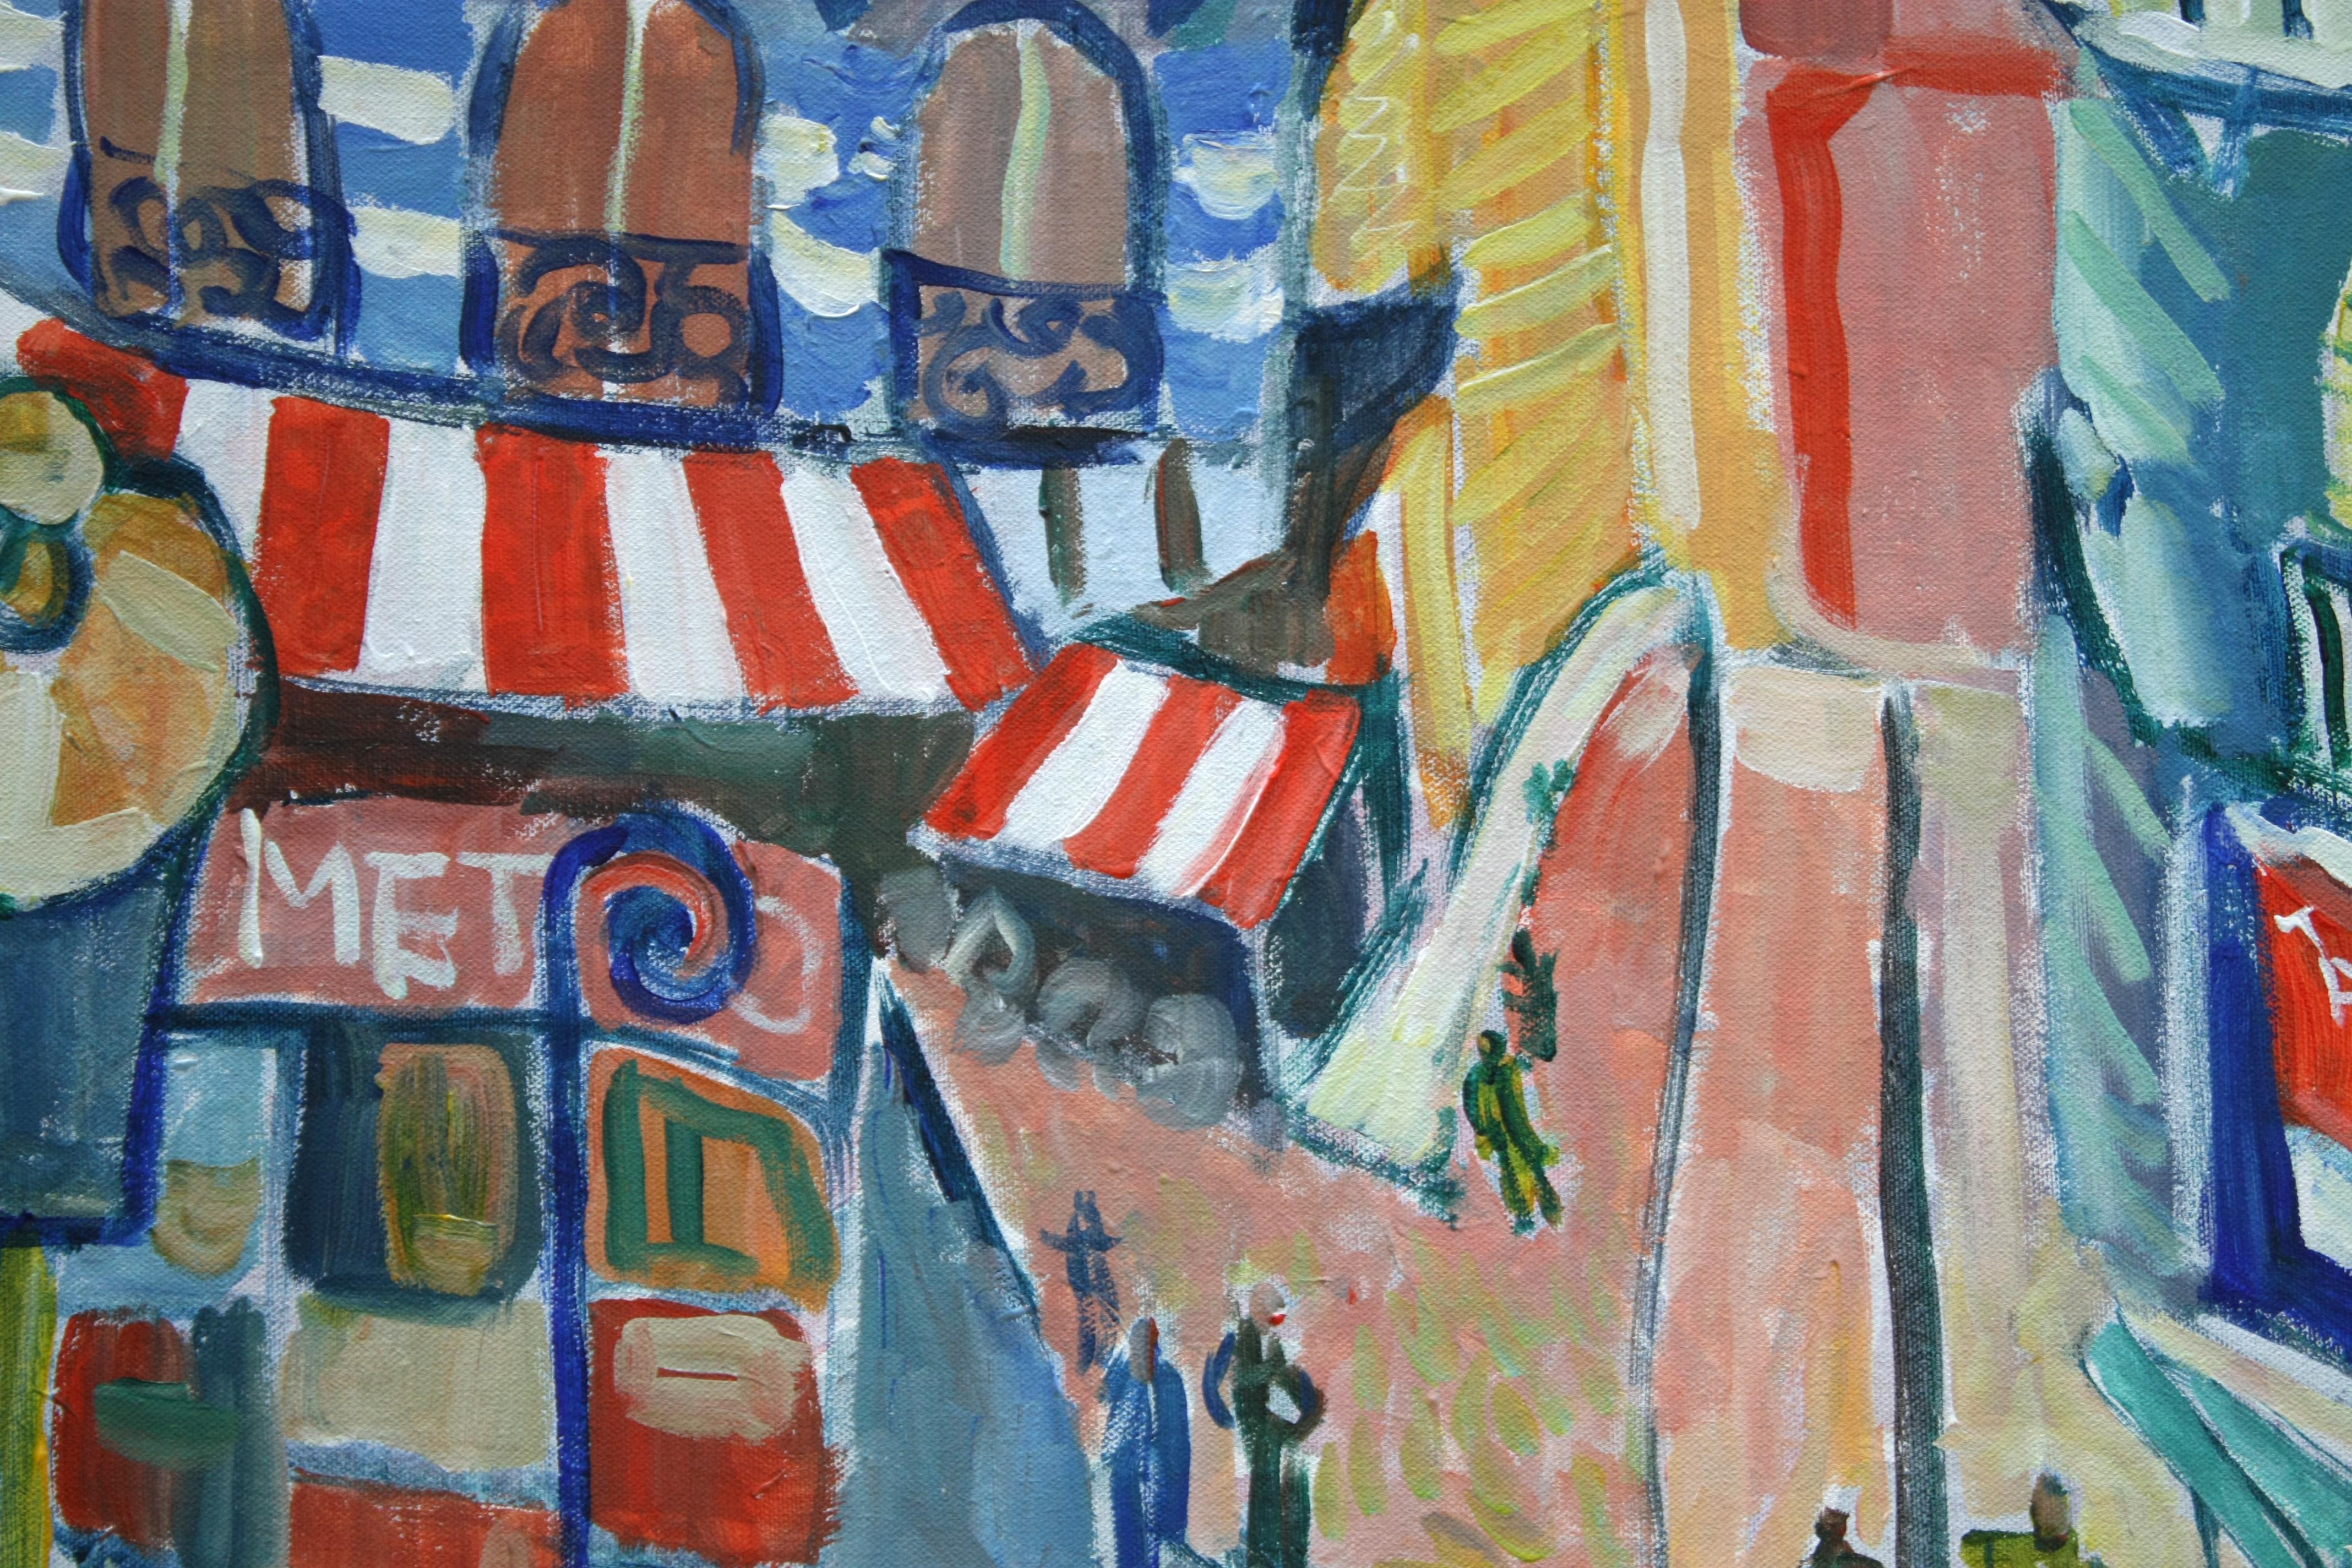 <p>Kommentare des Künstlers<br>Der Künstler Robert Hofherr präsentiert eine energiegeladene Darstellung einer Stadtszene. Die fauvistischen Farben und expressionistischen Malereien schaffen ein einprägsames Bild. 